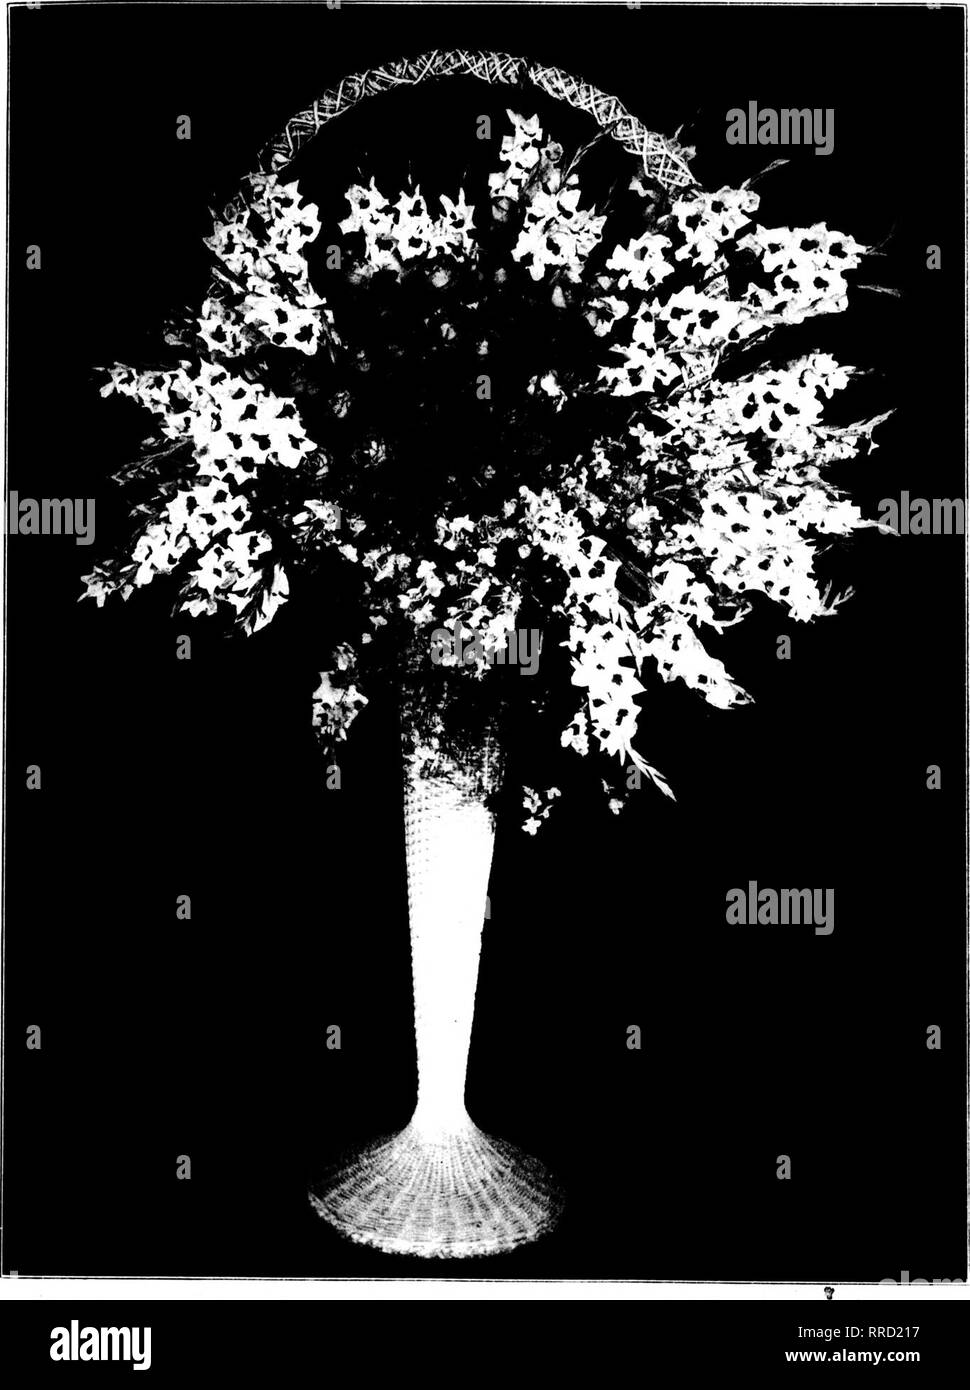 Tako Black and White Stock Photos & Images - Alamy